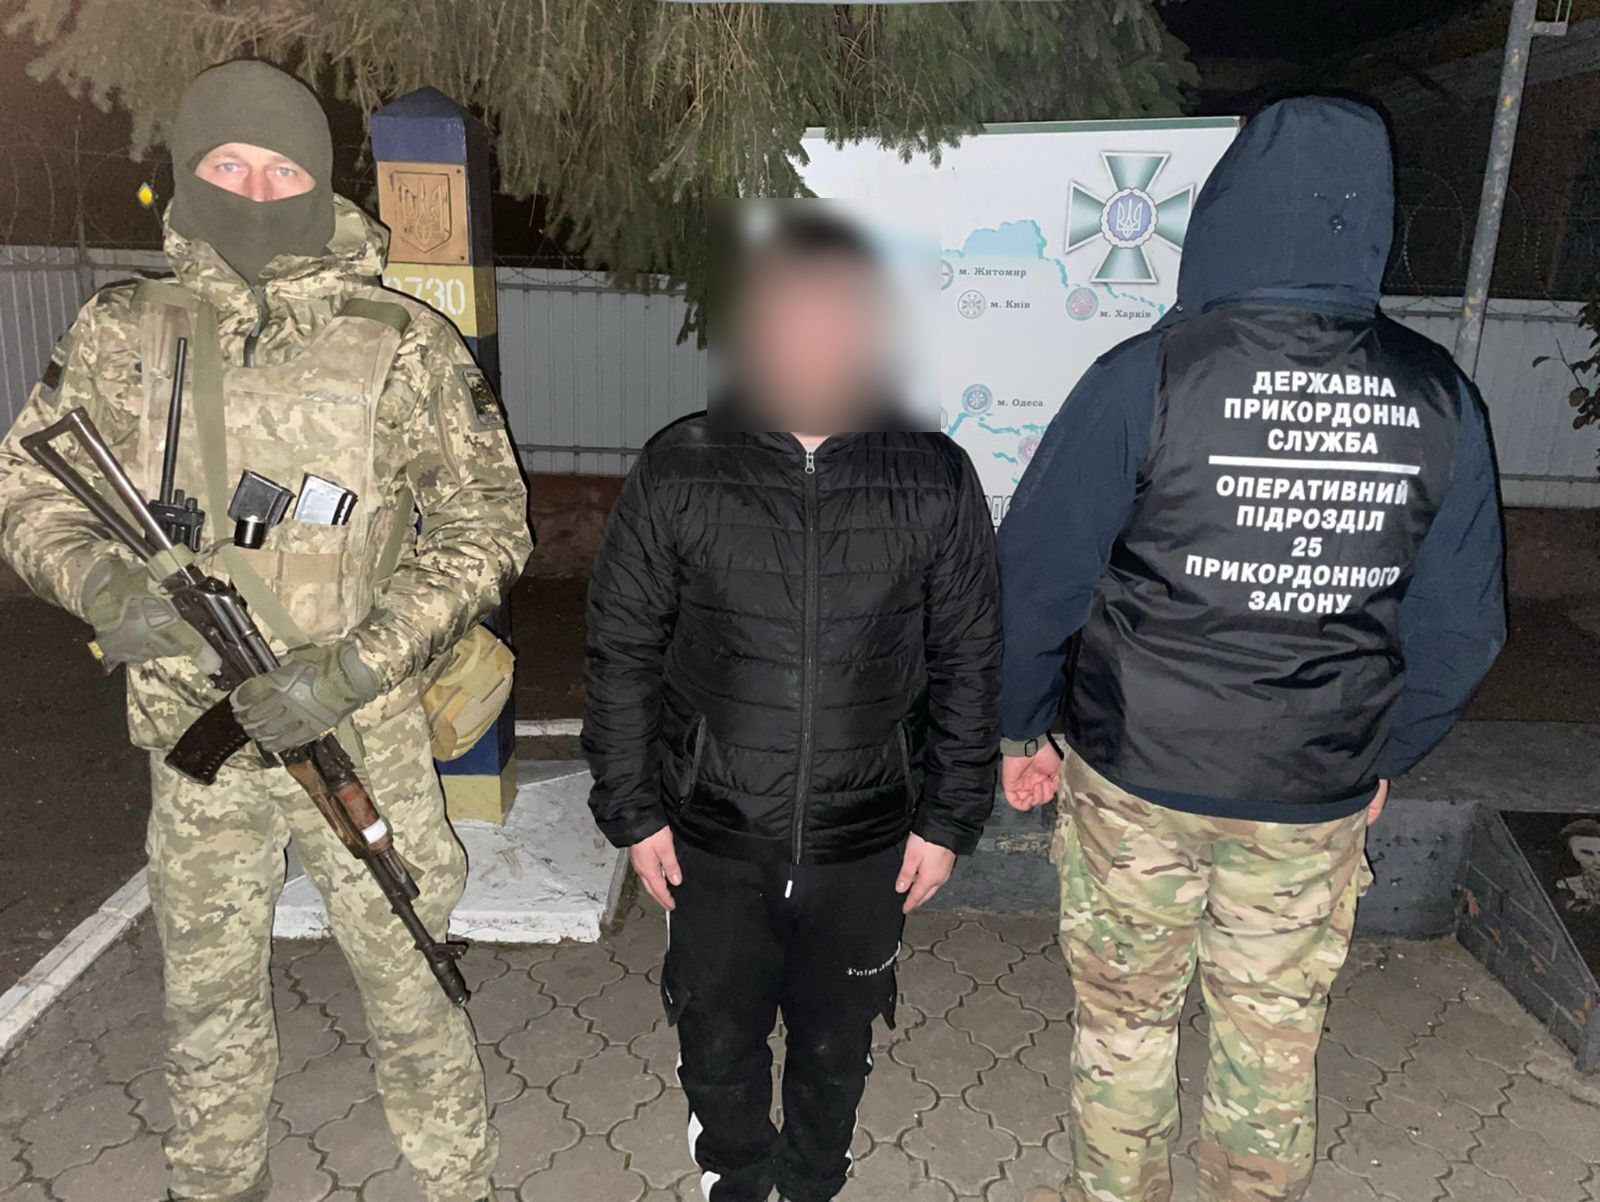 Первый антиуклонист: на границе задержан мужчина, возвращавшийся из Молдовы в обход пункта пропуска